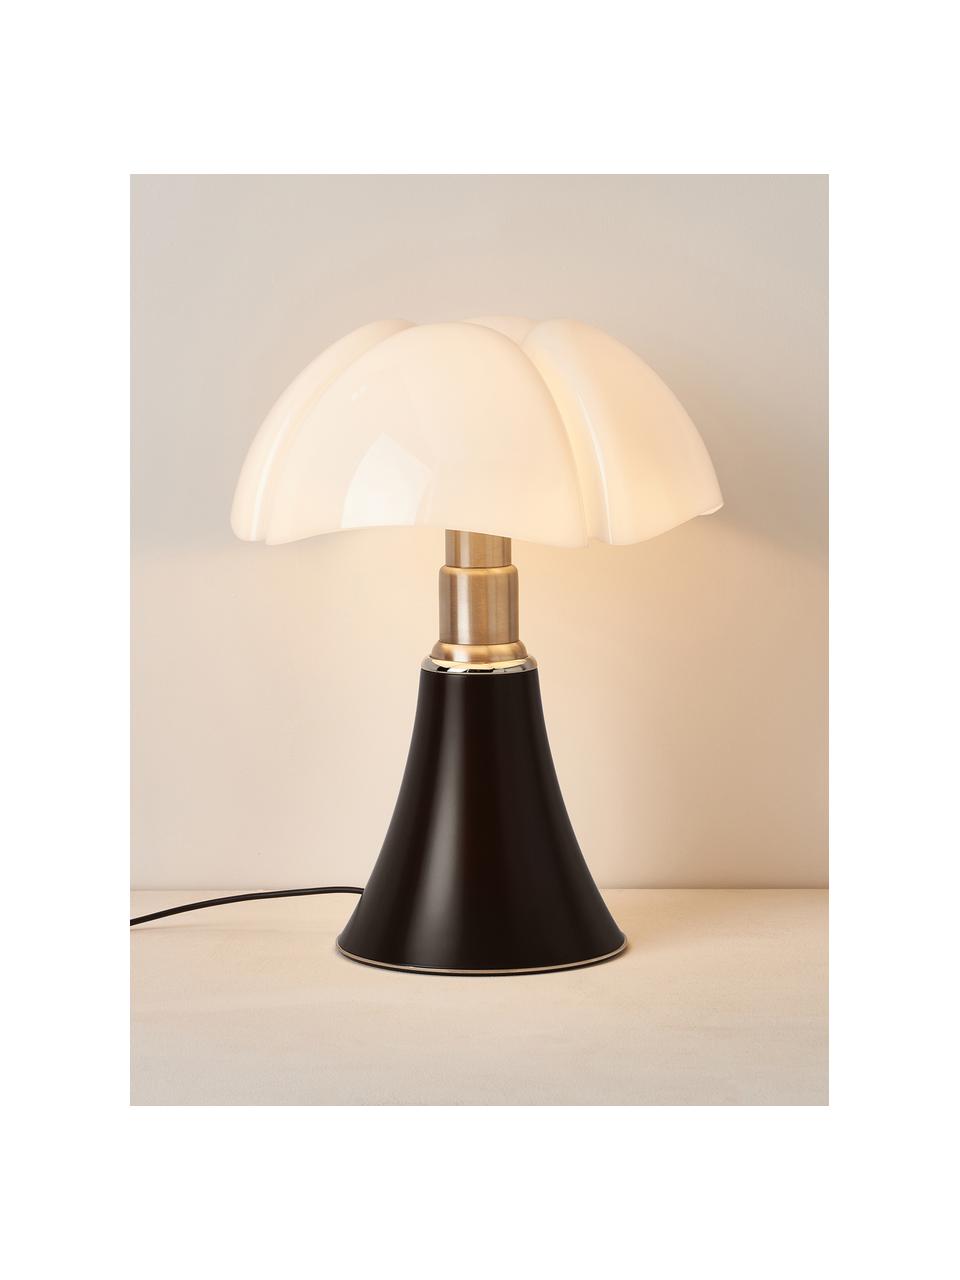 Lampa stołowa LED z funkcją przyciemniania Pipistrello, Stelaż: metal, aluminium, lakiero, Ciemny brązowy, matowy, Ø 40 x W 50 cm